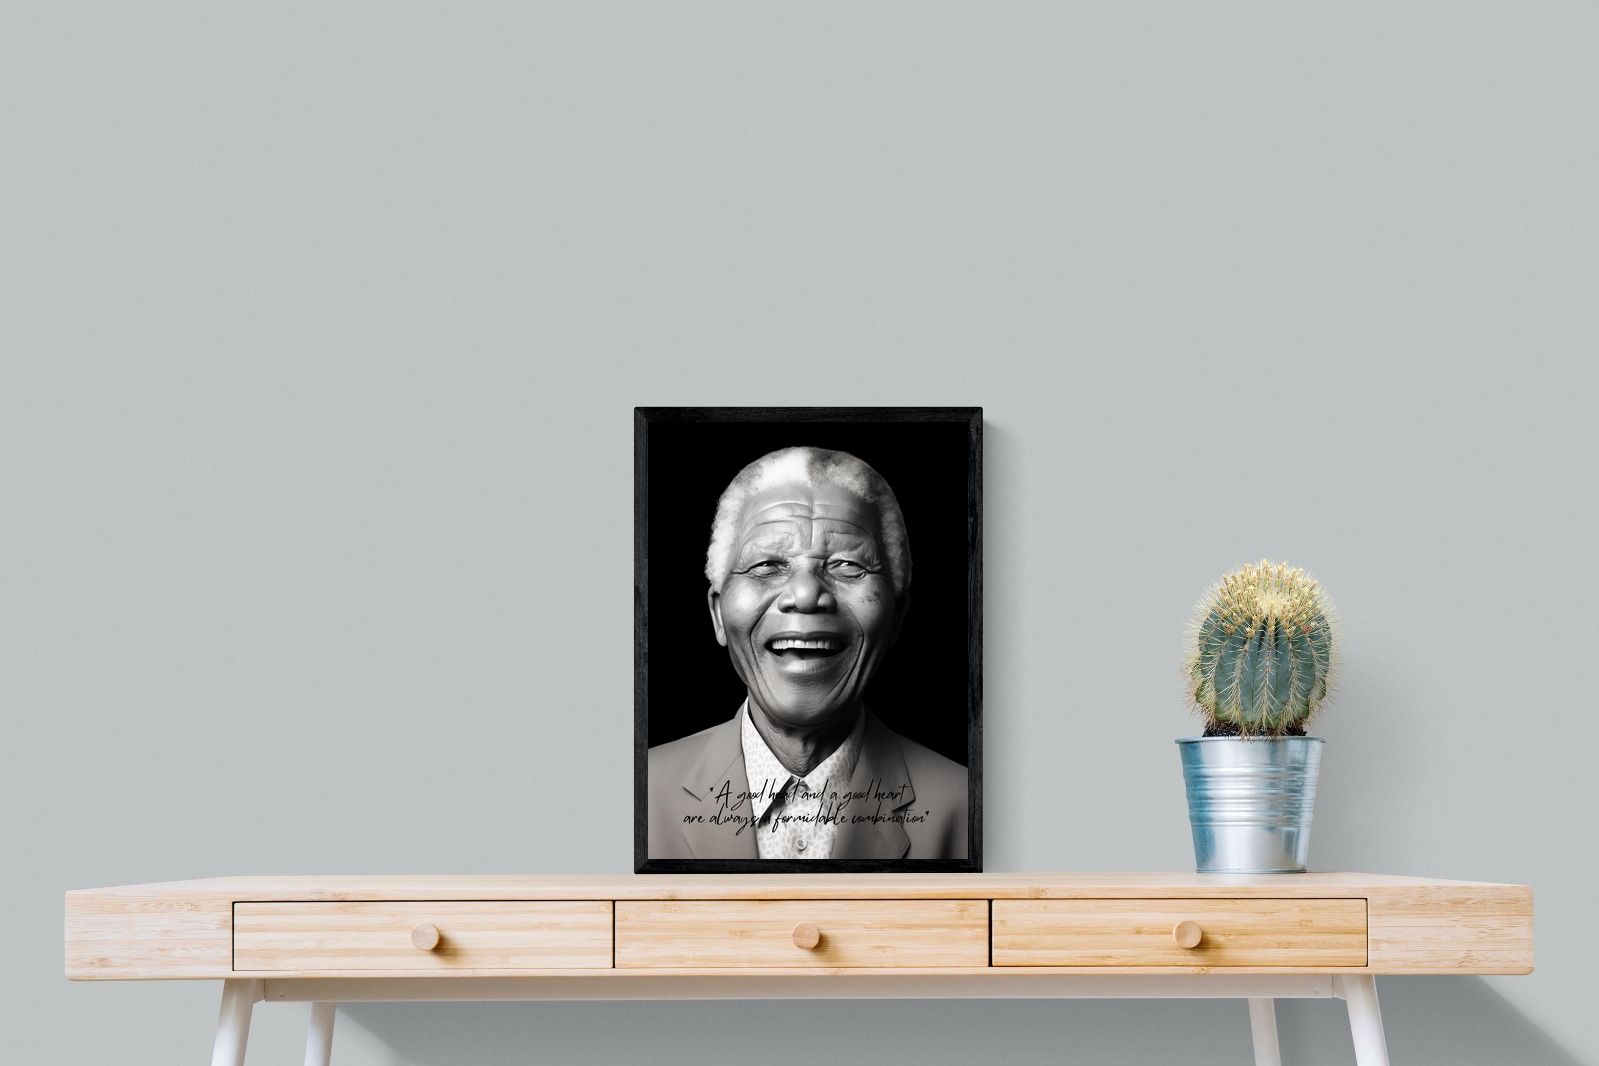 Pixalot Mandela's Wisdom